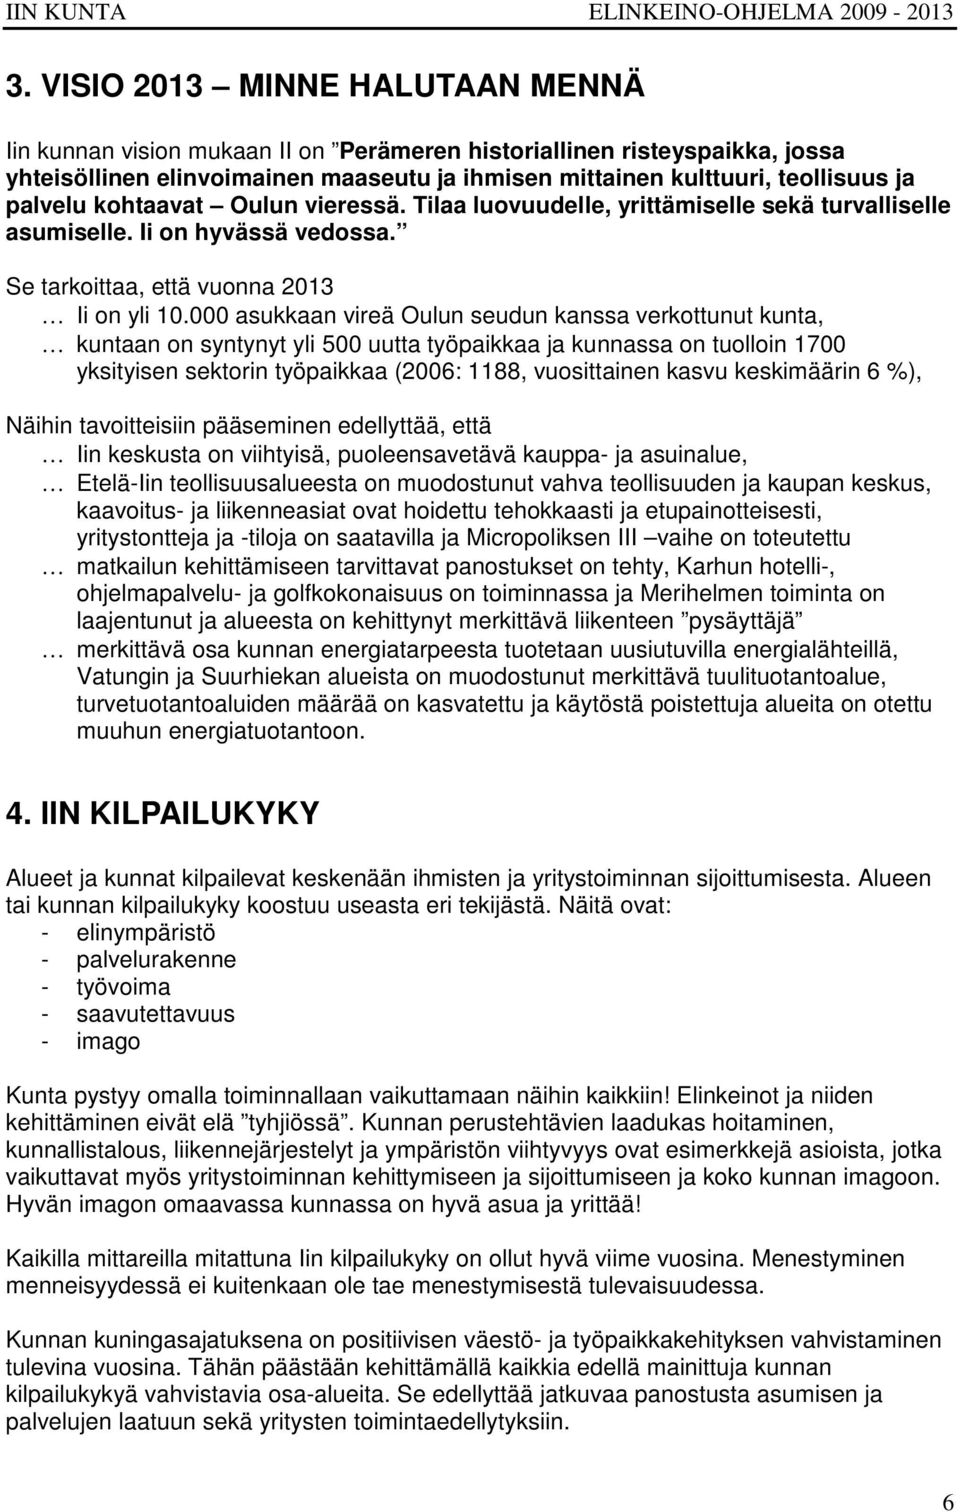 000 asukkaan vireä Oulun seudun kanssa verkottunut kunta, kuntaan on syntynyt yli 500 uutta työpaikkaa ja kunnassa on tuolloin 1700 yksityisen sektorin työpaikkaa (2006: 1188, vuosittainen kasvu